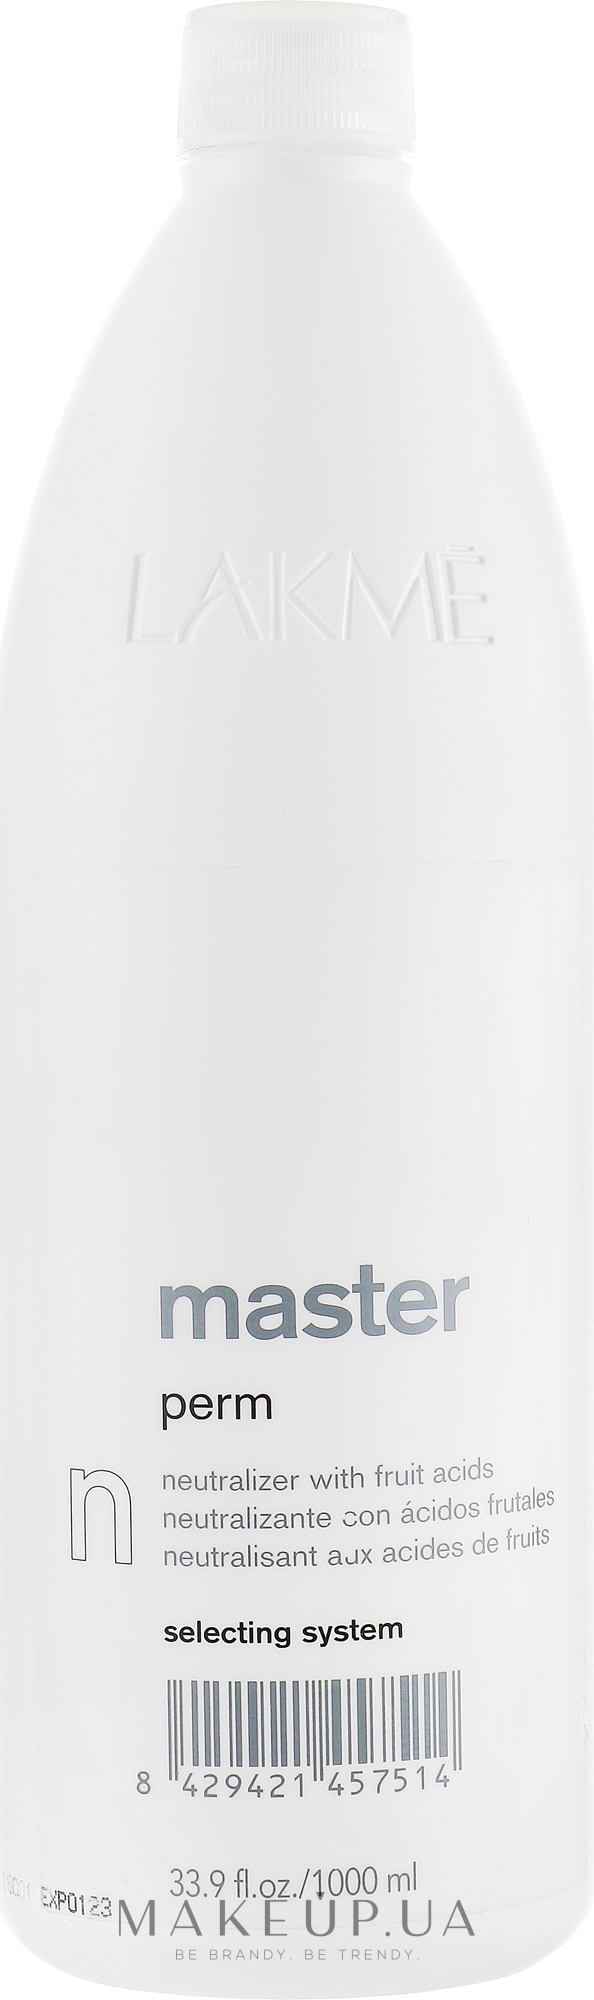 Нейтрализатор лосьона для химической завивки волос - Lakme Master Perm Neutralizer — фото 1000ml